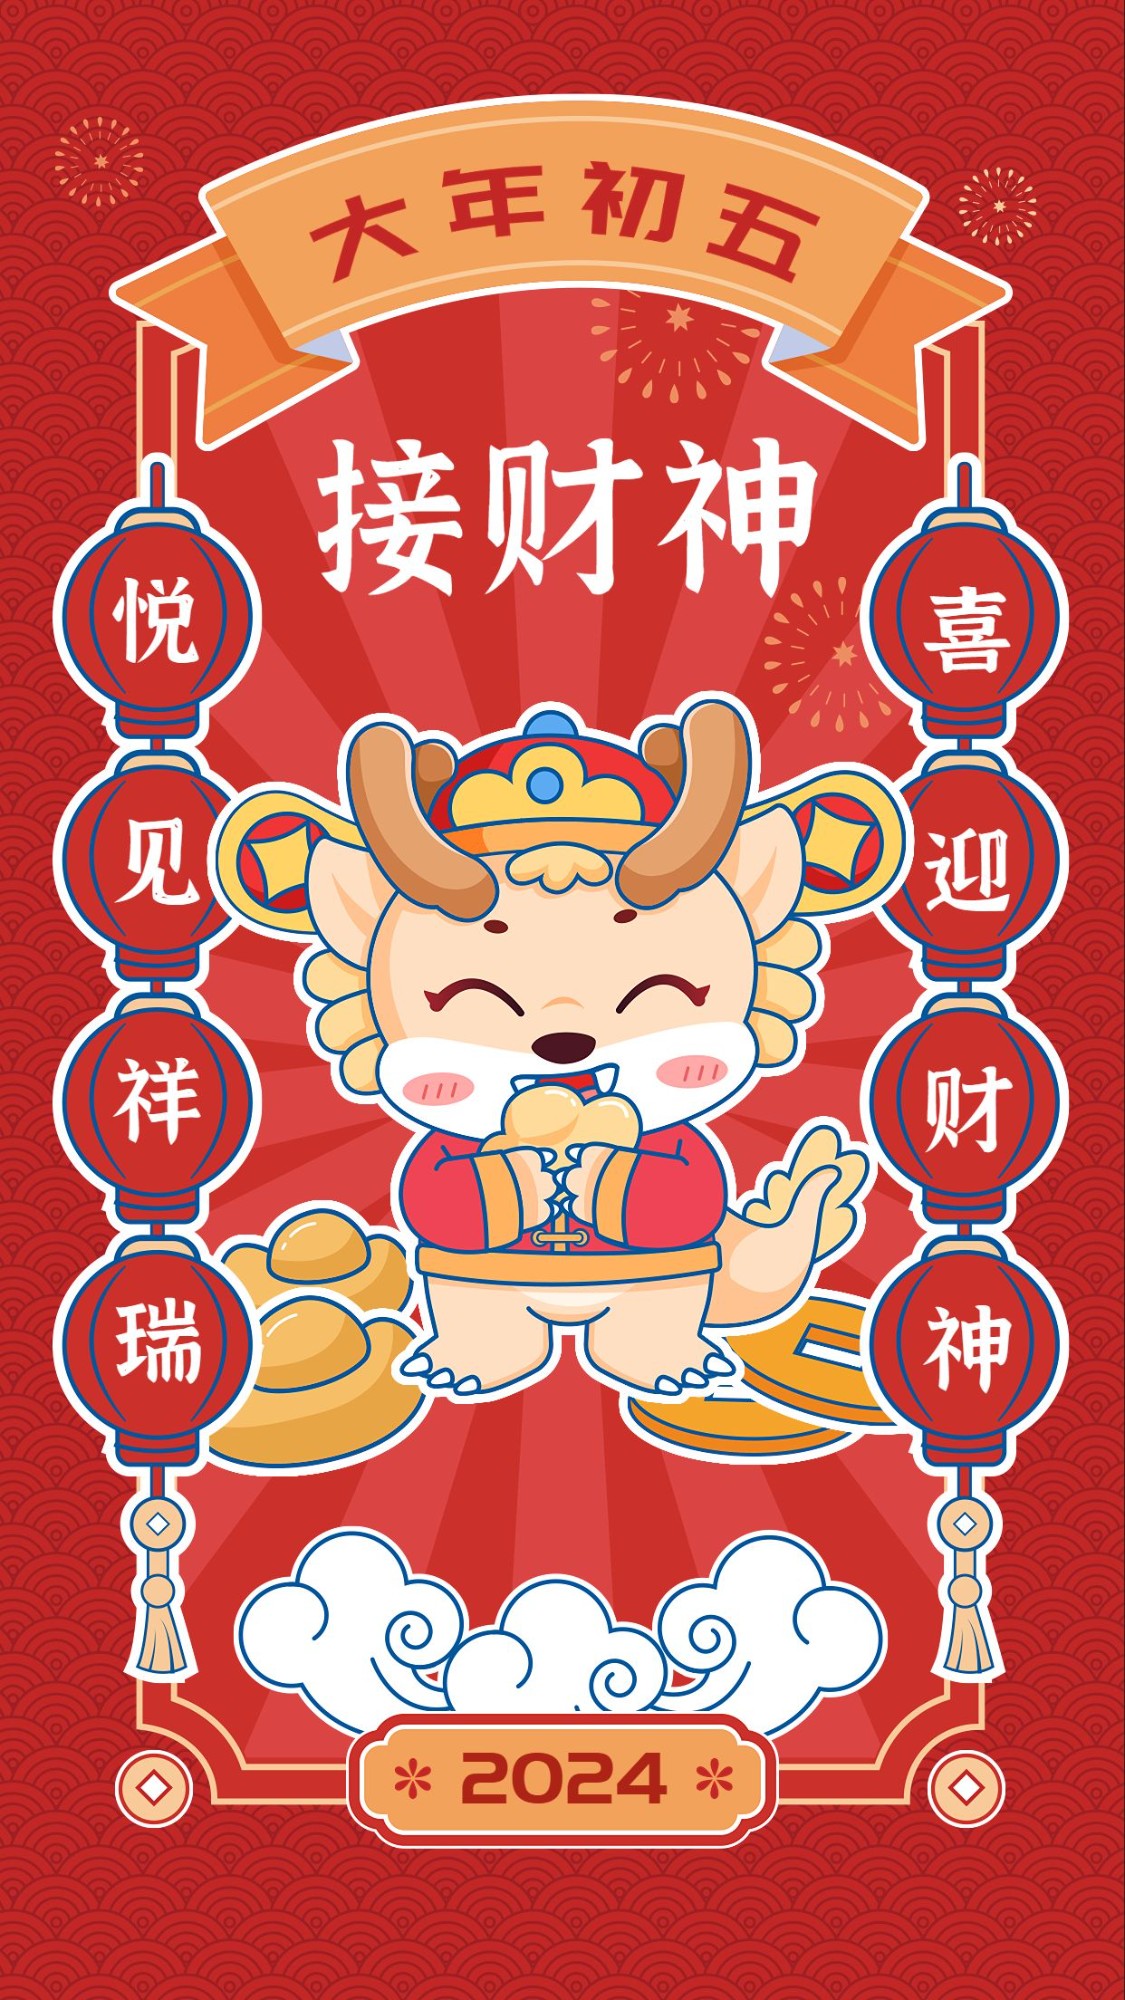 教育培训春节祝福大年初五迎财神可爱中国风插画手机海报预览效果